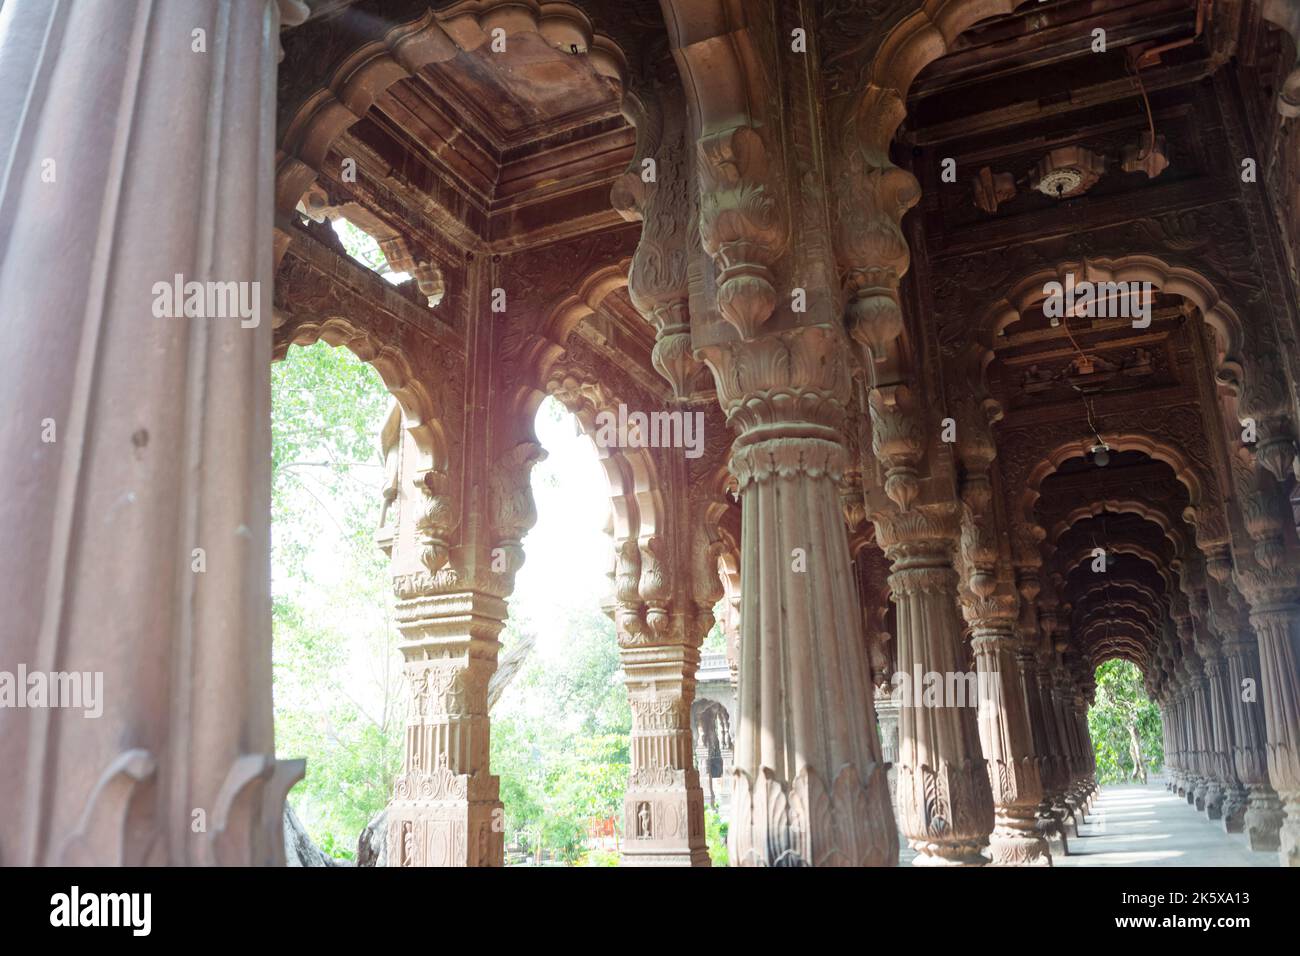 Colonne e archi di Krishnapura Chhatri, Indore, Madhya Pradesh. Architettura indiana. Antica architettura del tempio indiano. Foto Stock